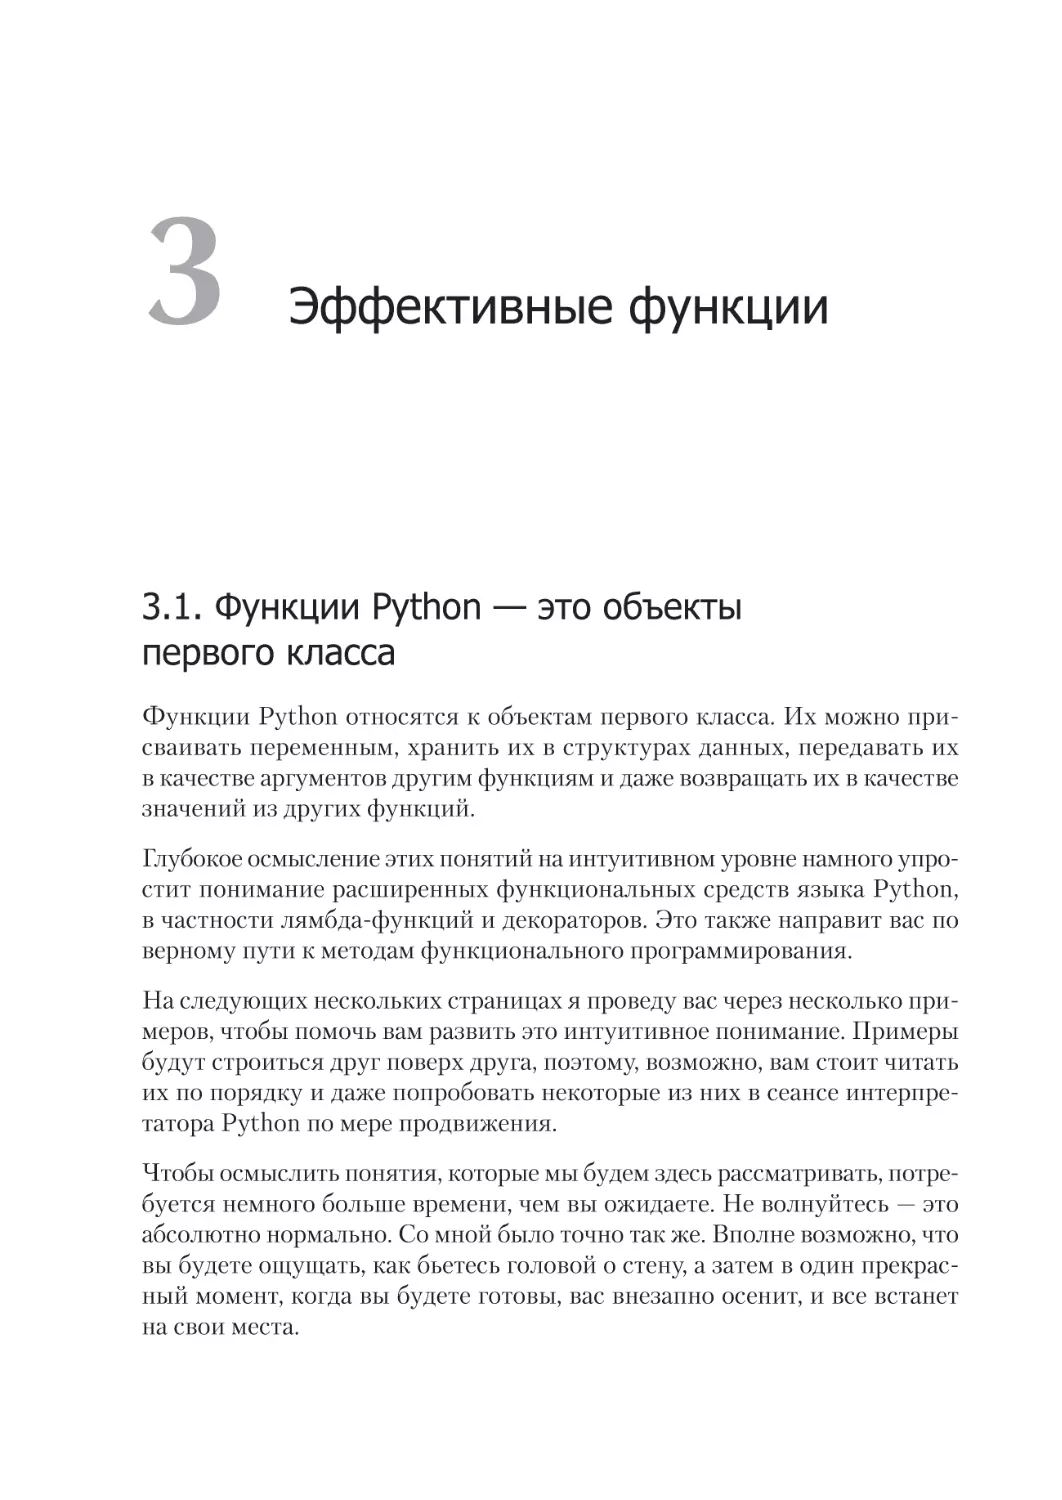 Глава 3. Эффективные функции
3.1. Функции Python — это объекты первого класса